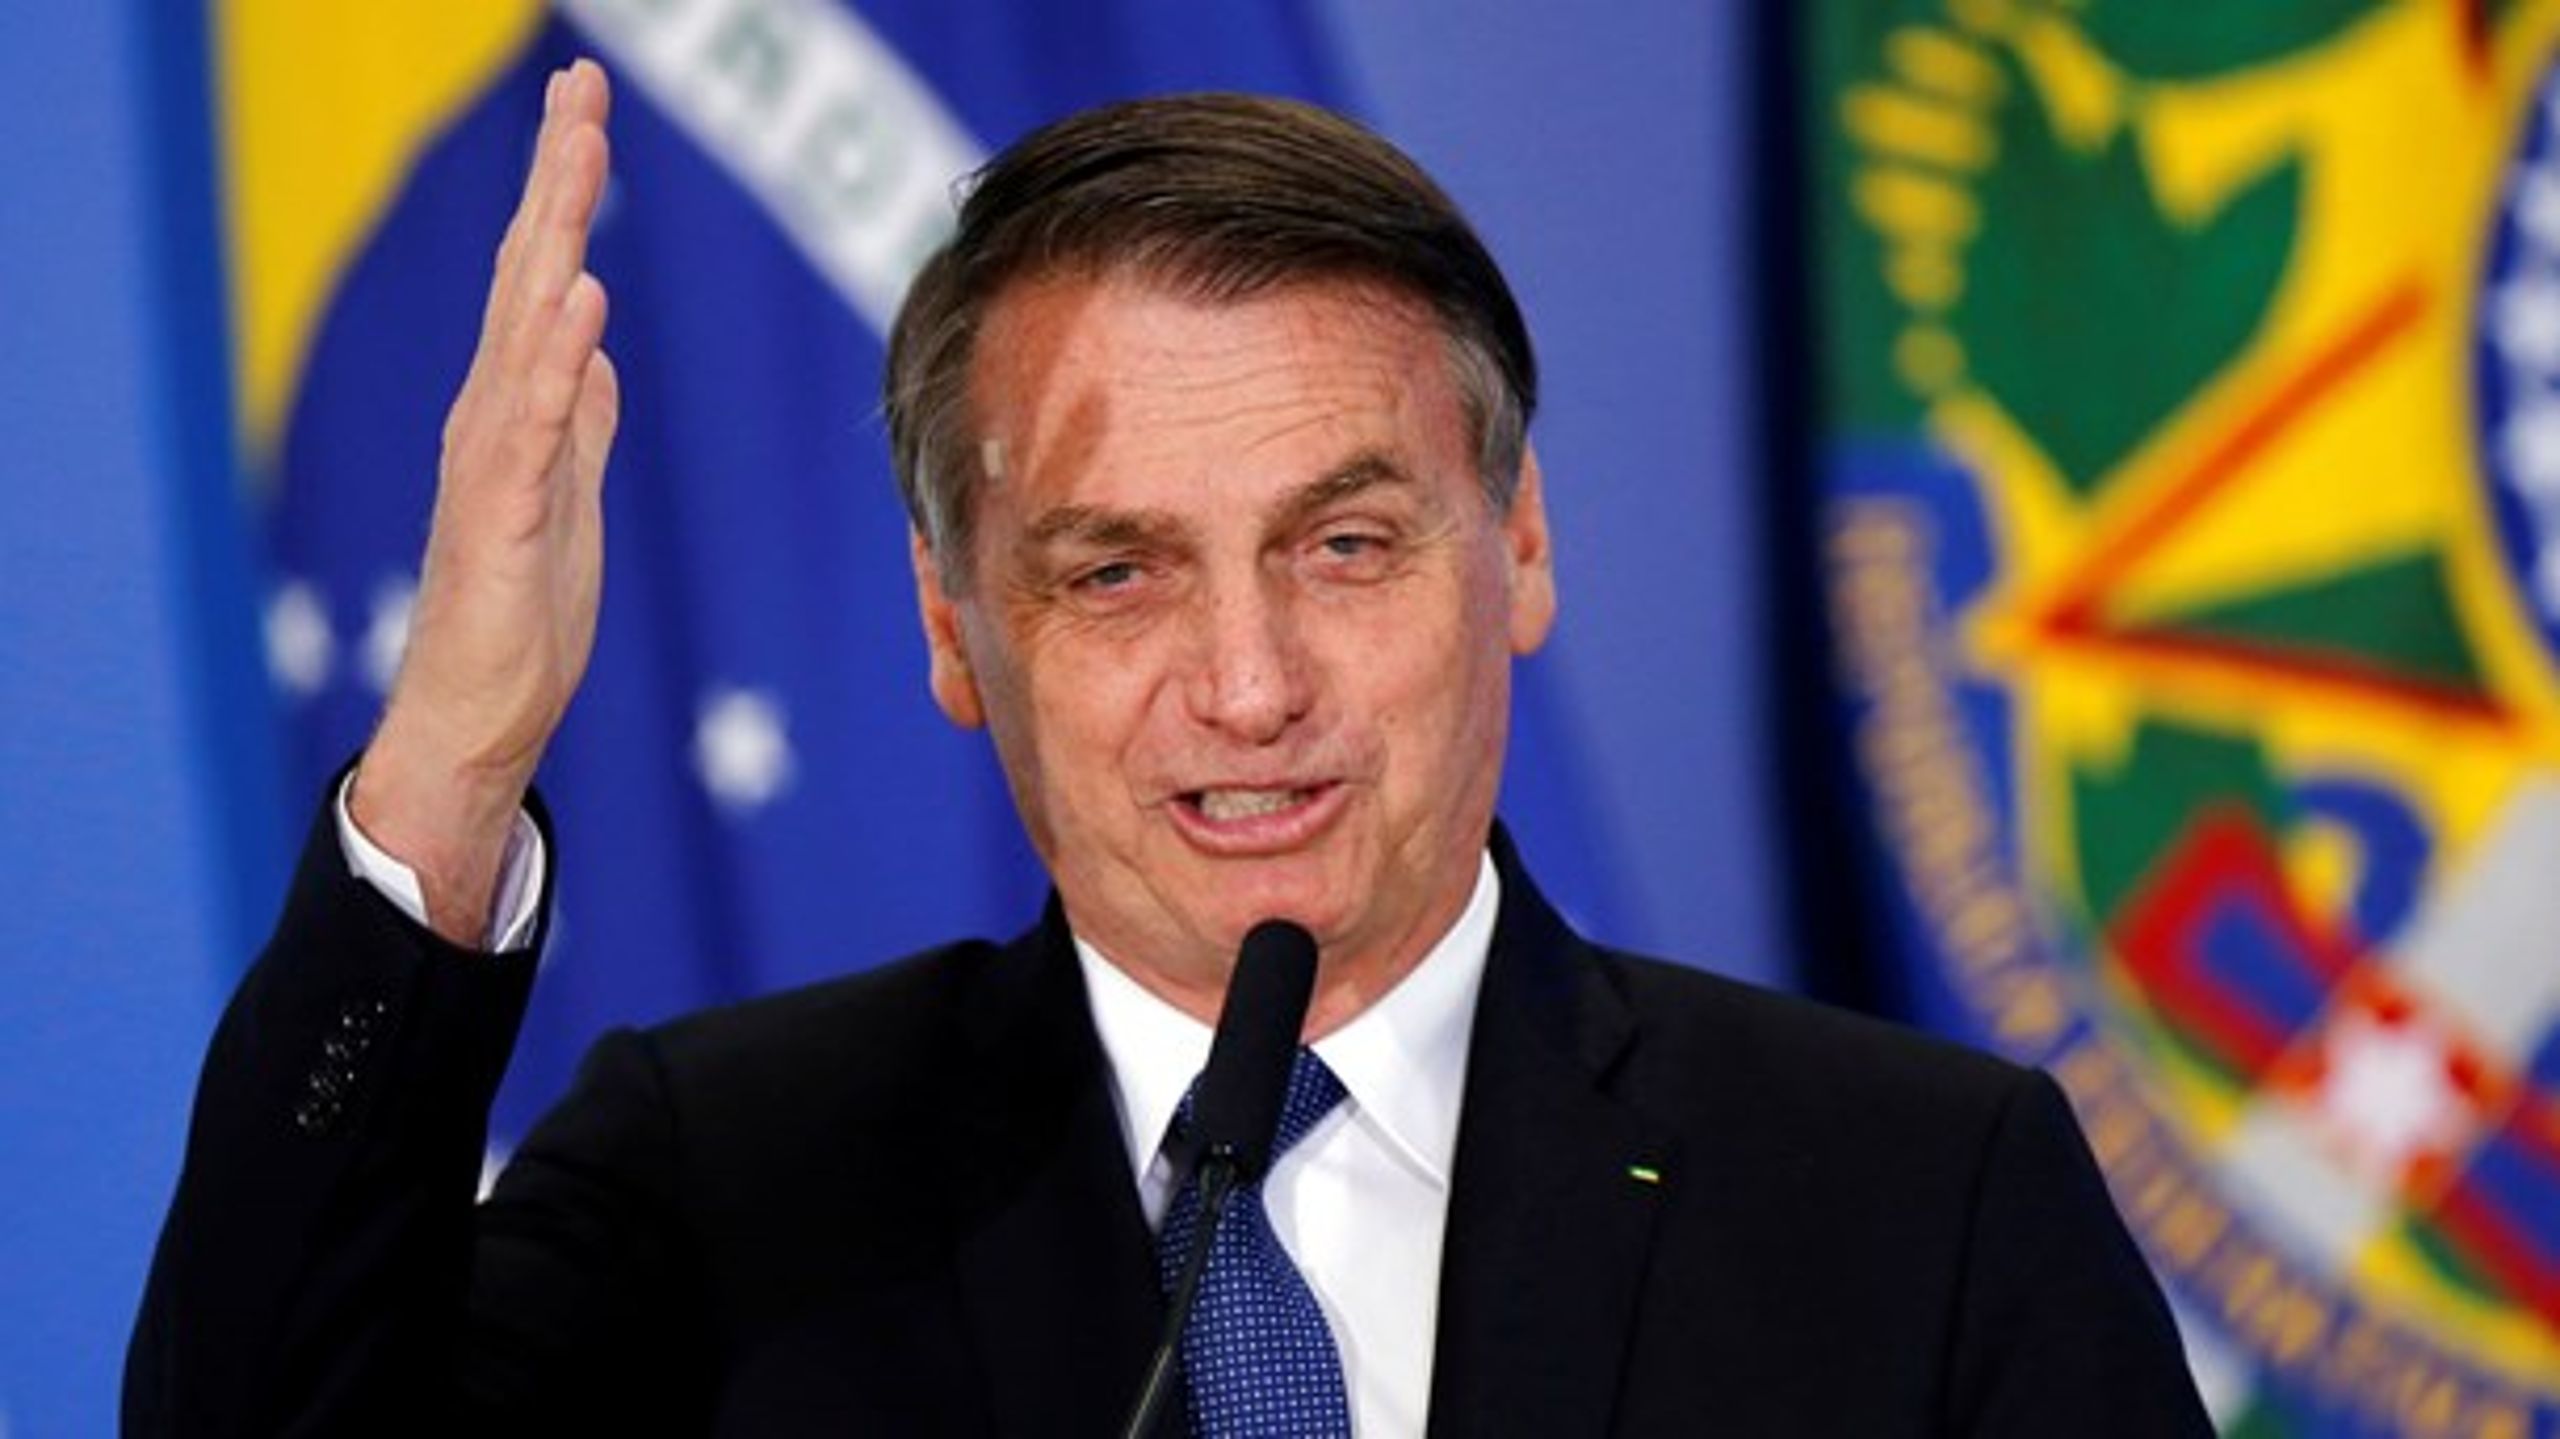 I 2018 blev&nbsp;Jair&nbsp;Messias&nbsp;Bolsonaro&nbsp;valgt til Brasiliens præsident, og han håber nu at kunne give de brasilianske bønder bedre eksportmuligheder i EU med den frihandelsaftale, der netop nu forhandles om.